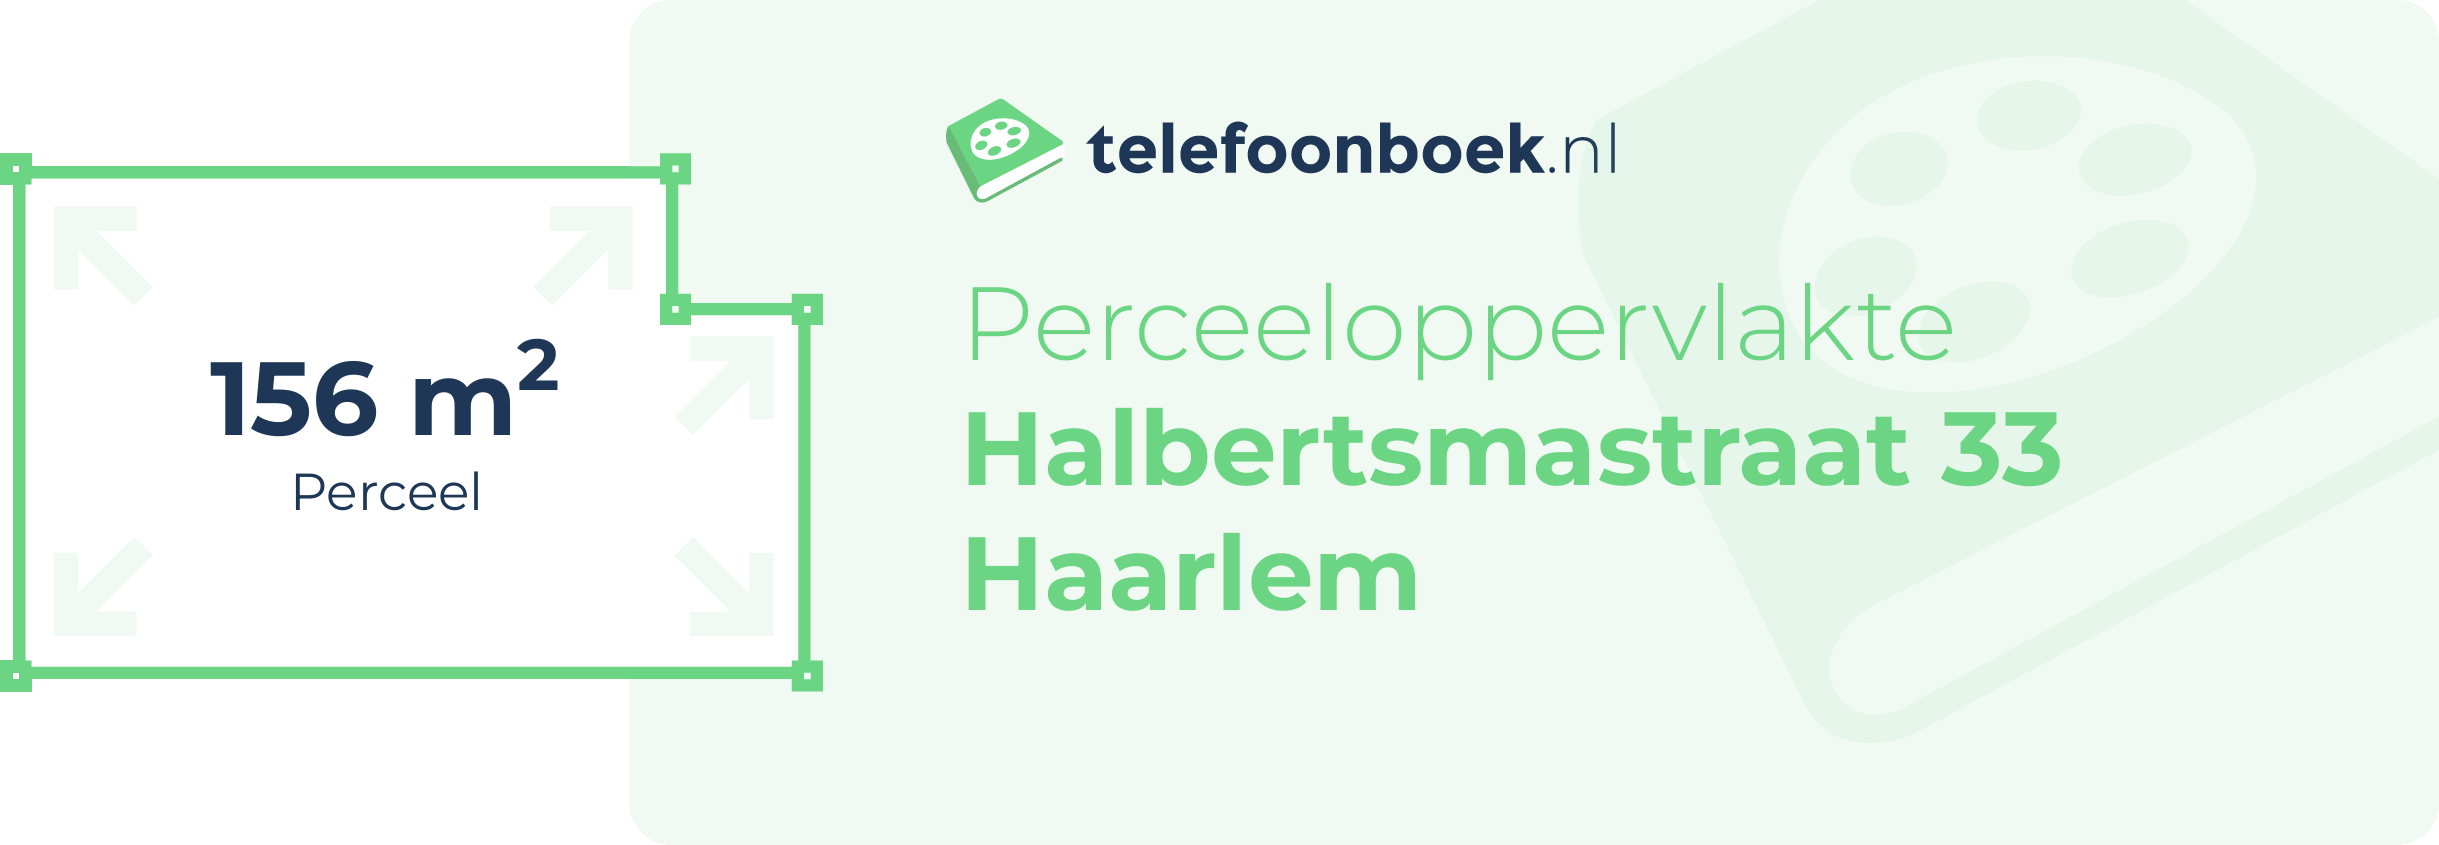 Perceeloppervlakte Halbertsmastraat 33 Haarlem